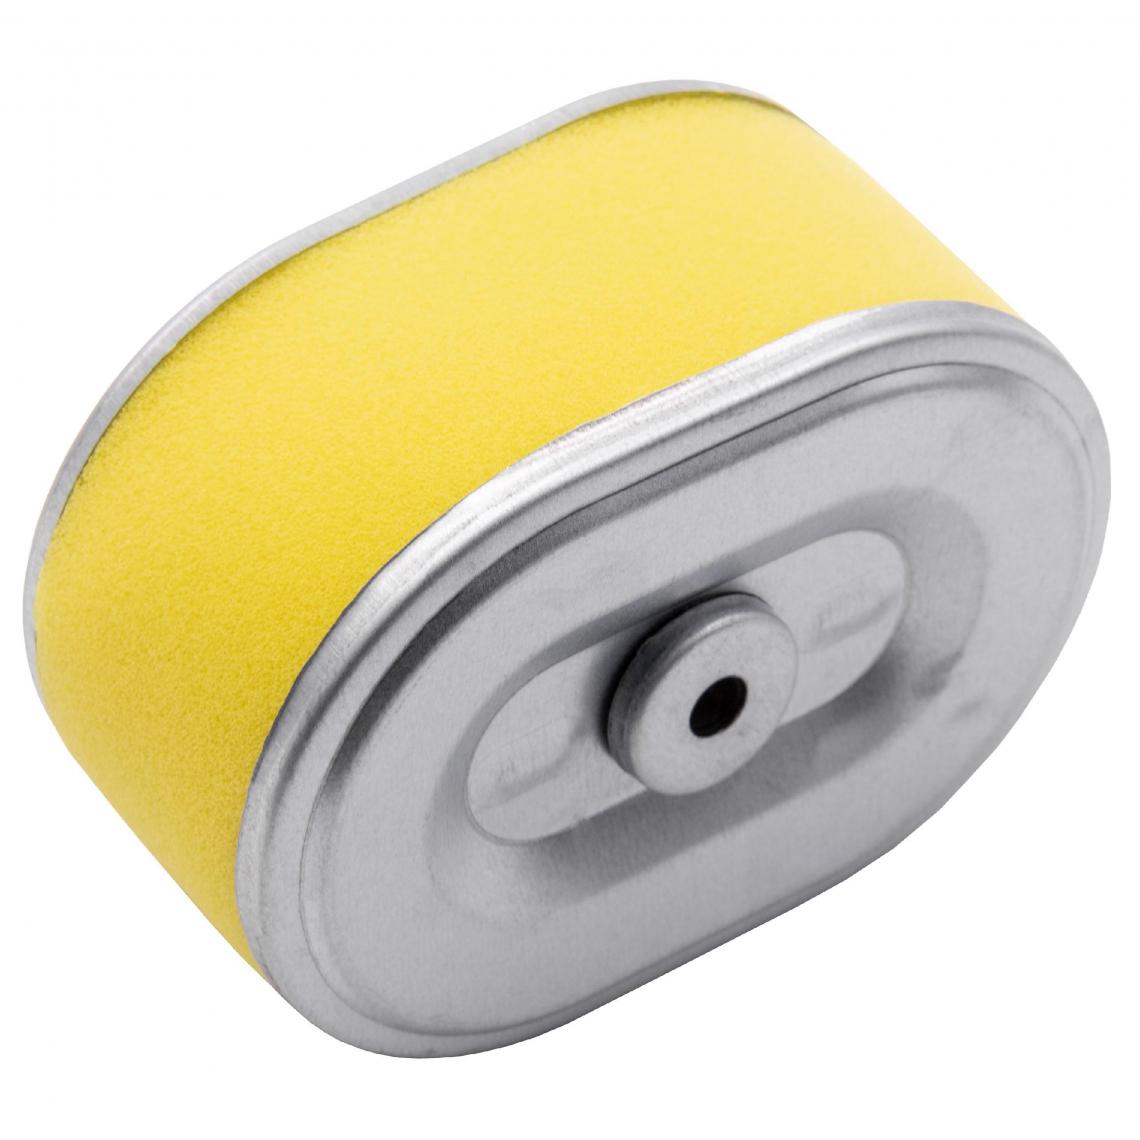 Vhbw - vhbw Filtre à air avec préfiltre de rechange jaune, argent remplace John Deere AM123909, MIU11464 compatible avec tondeuse à gazon; 10,1 x 7,2 x 5,1cm - Accessoires tondeuses